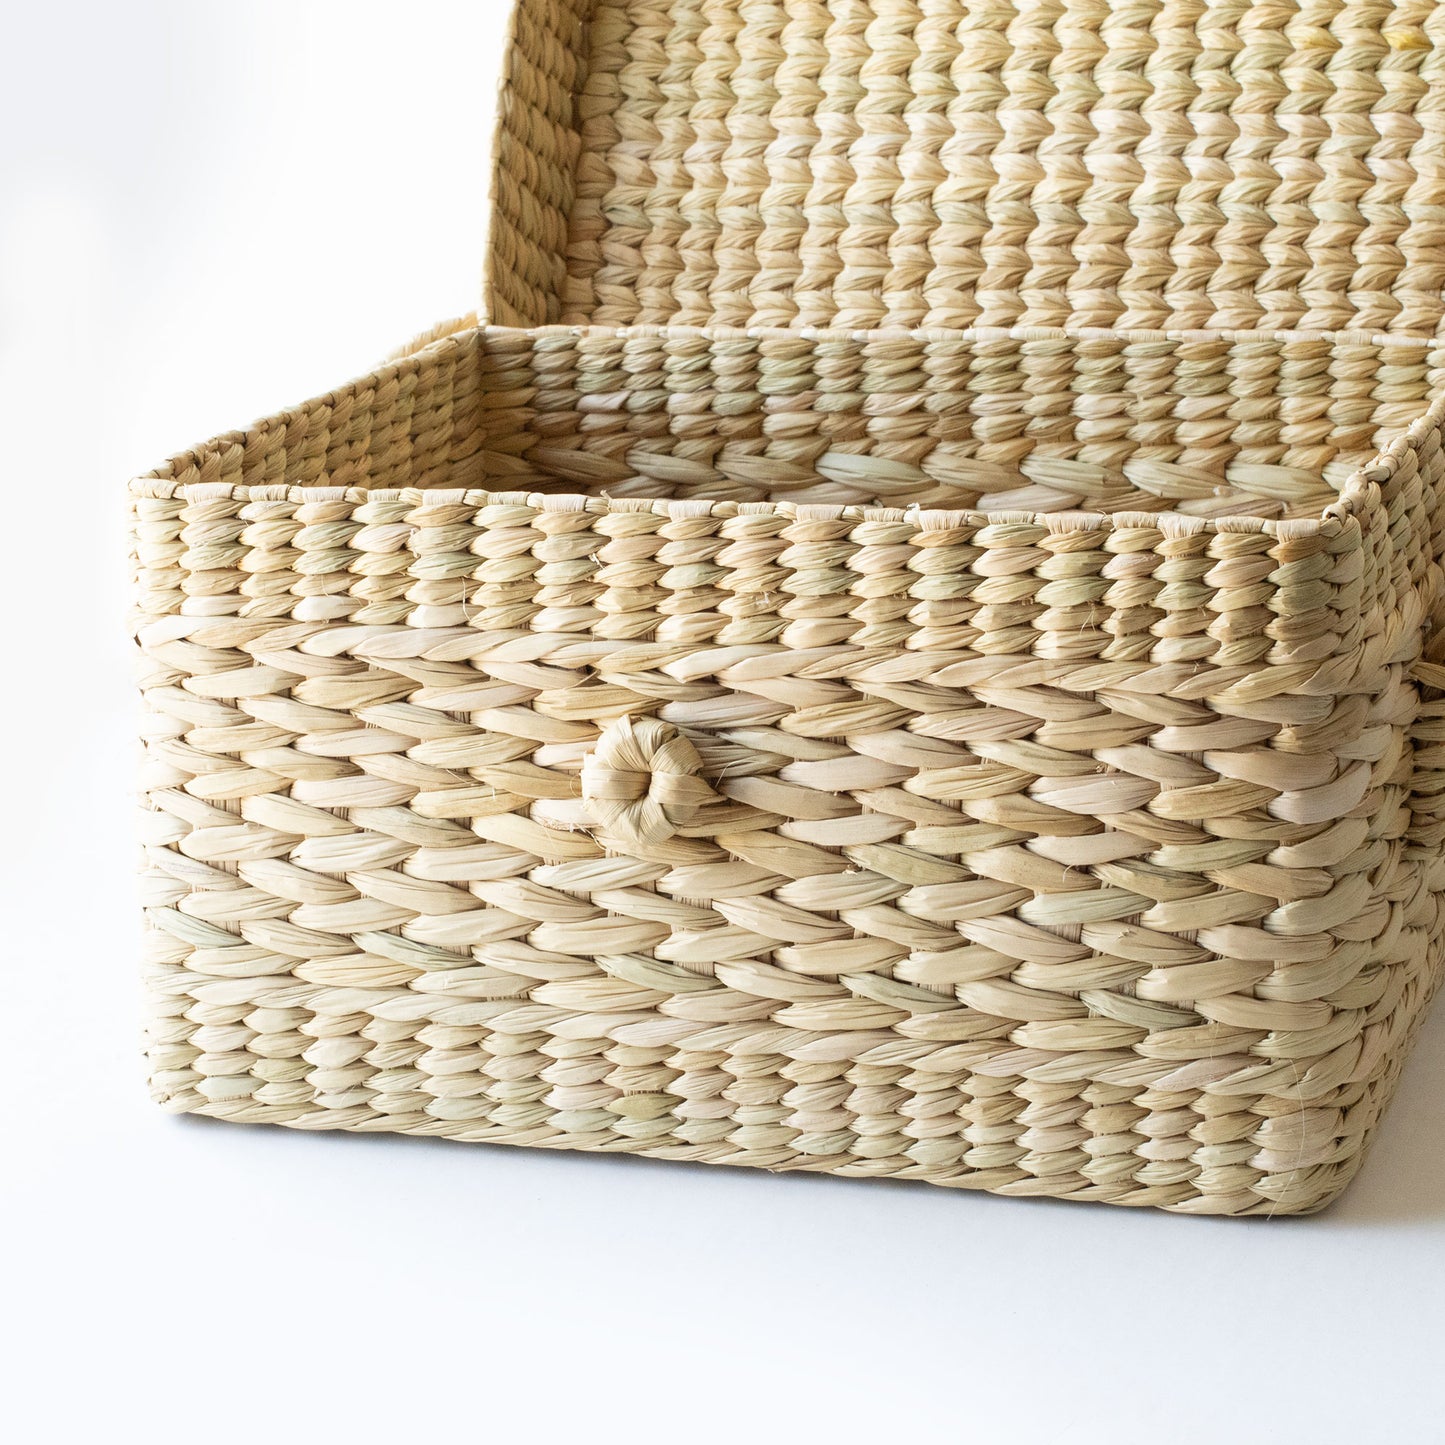 Ecofriendly natural gift basket